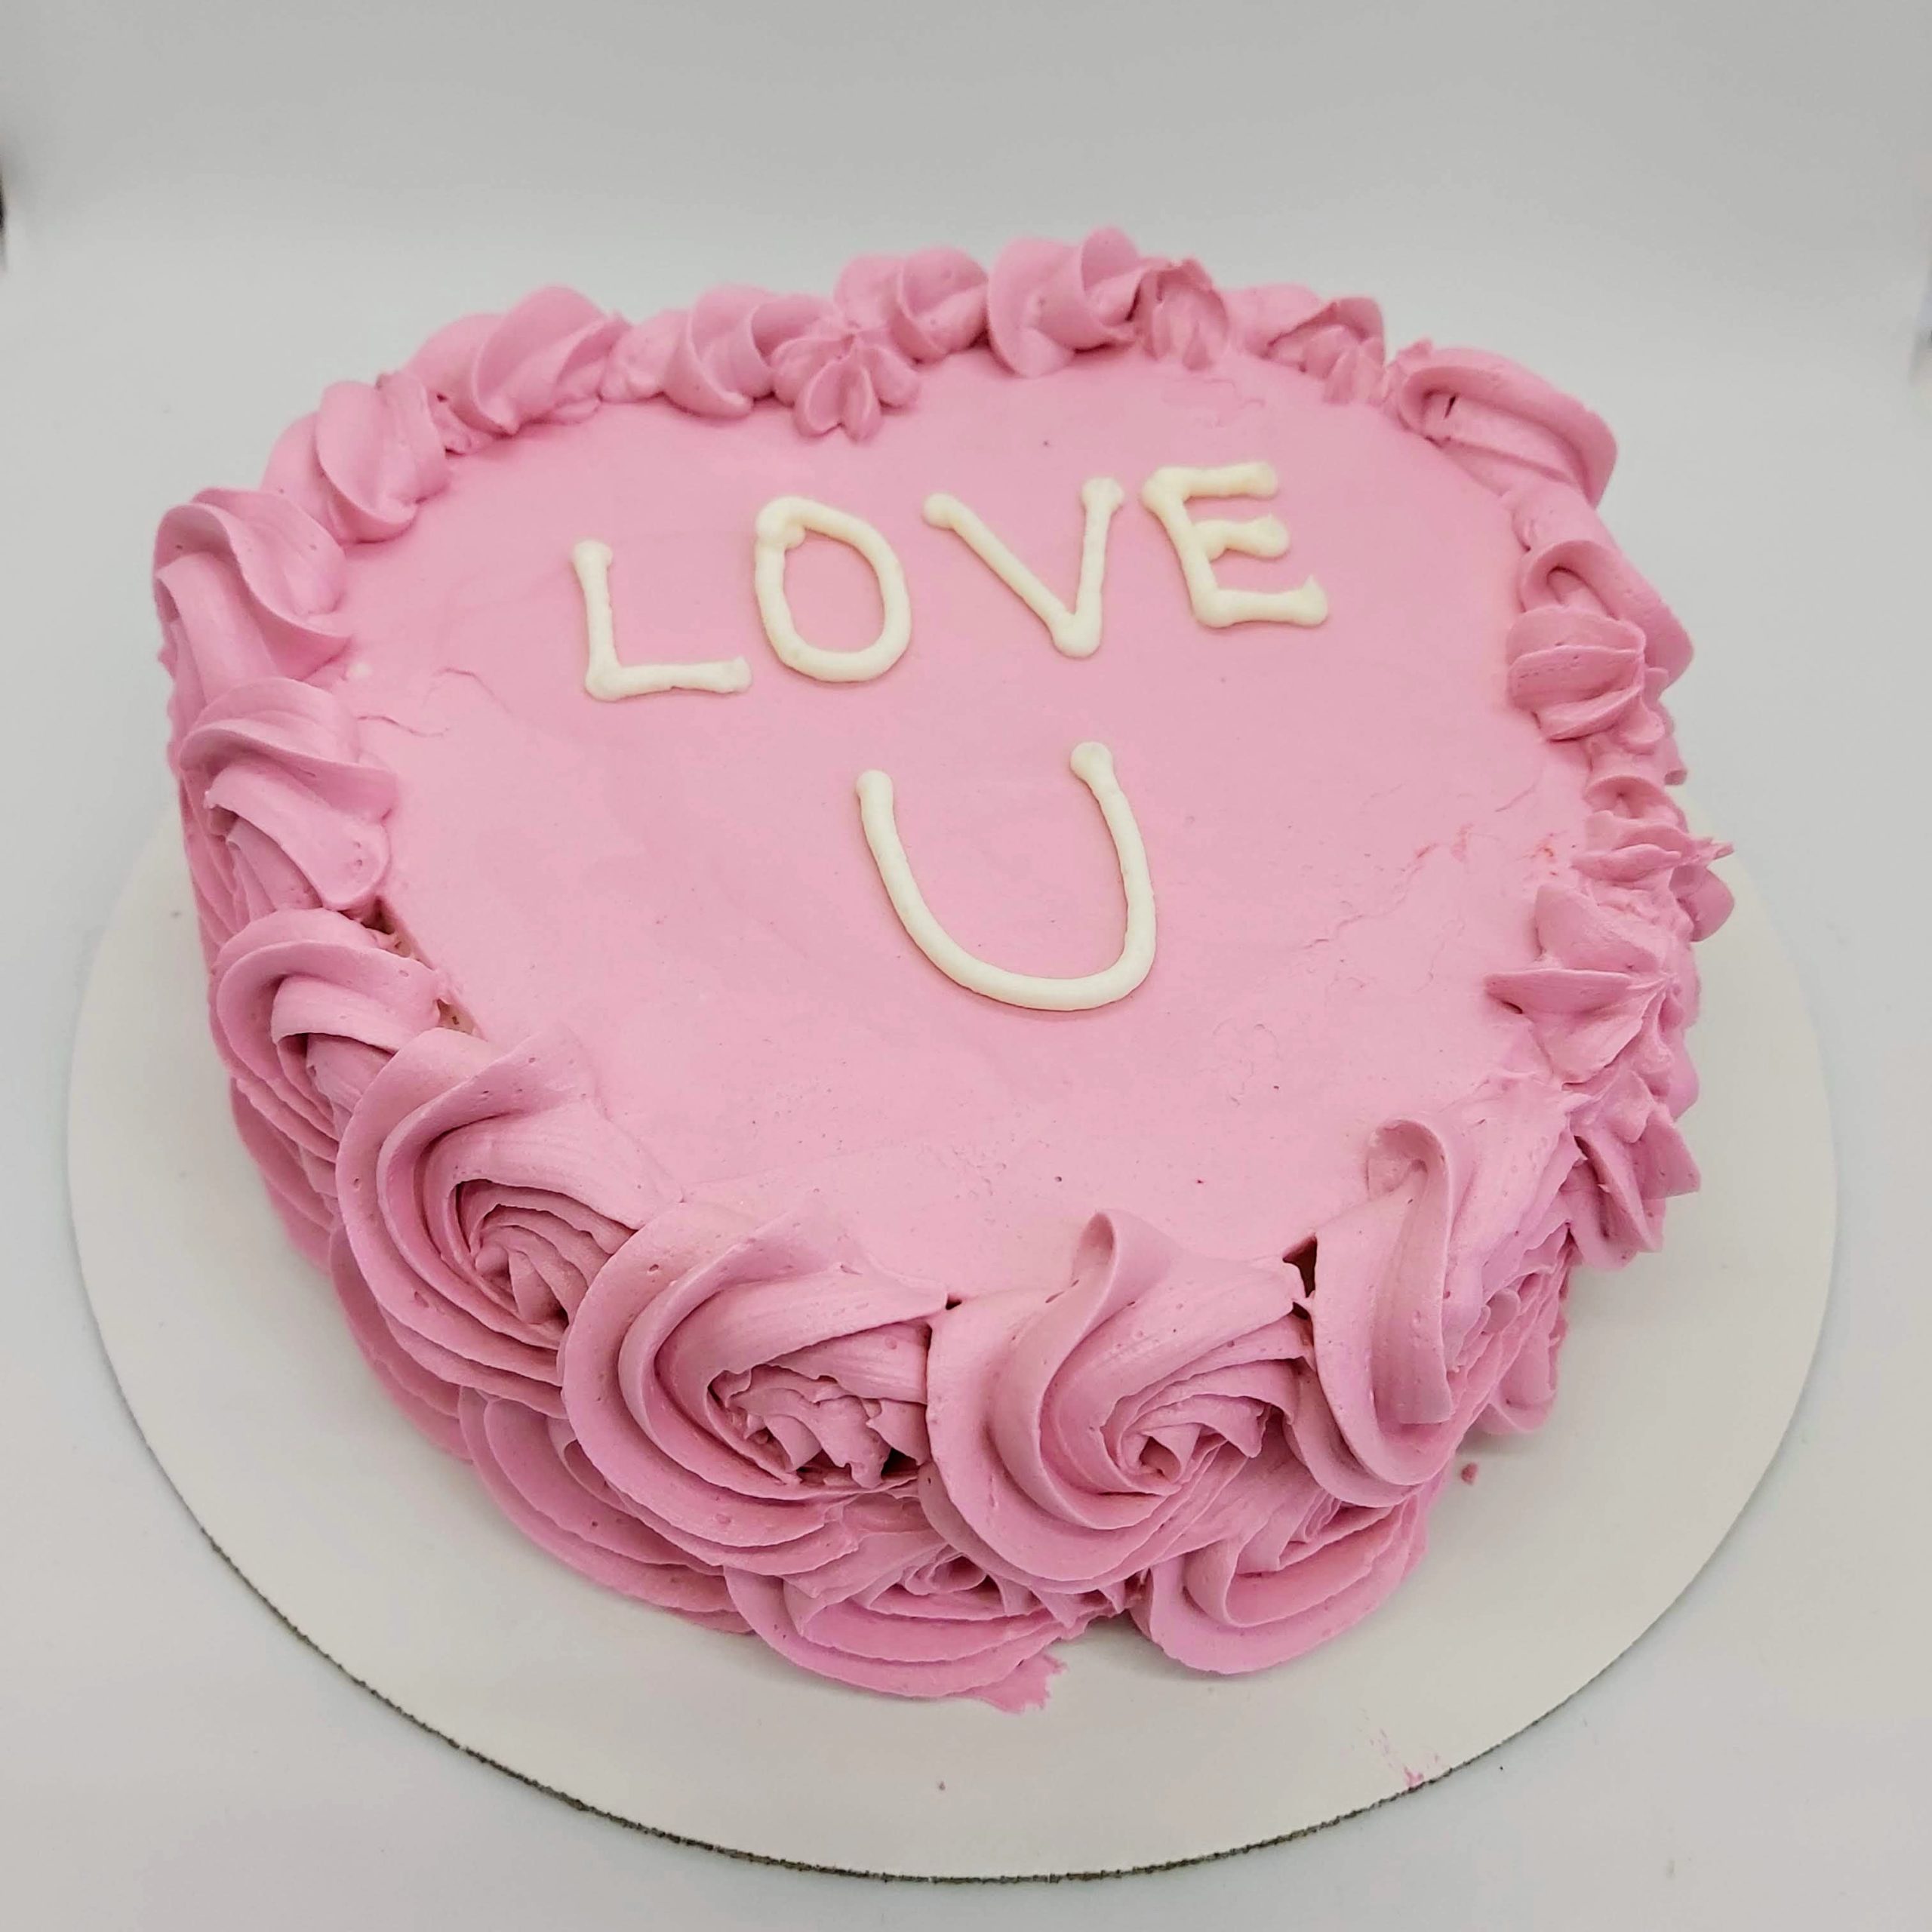 Rosette Heart Cake